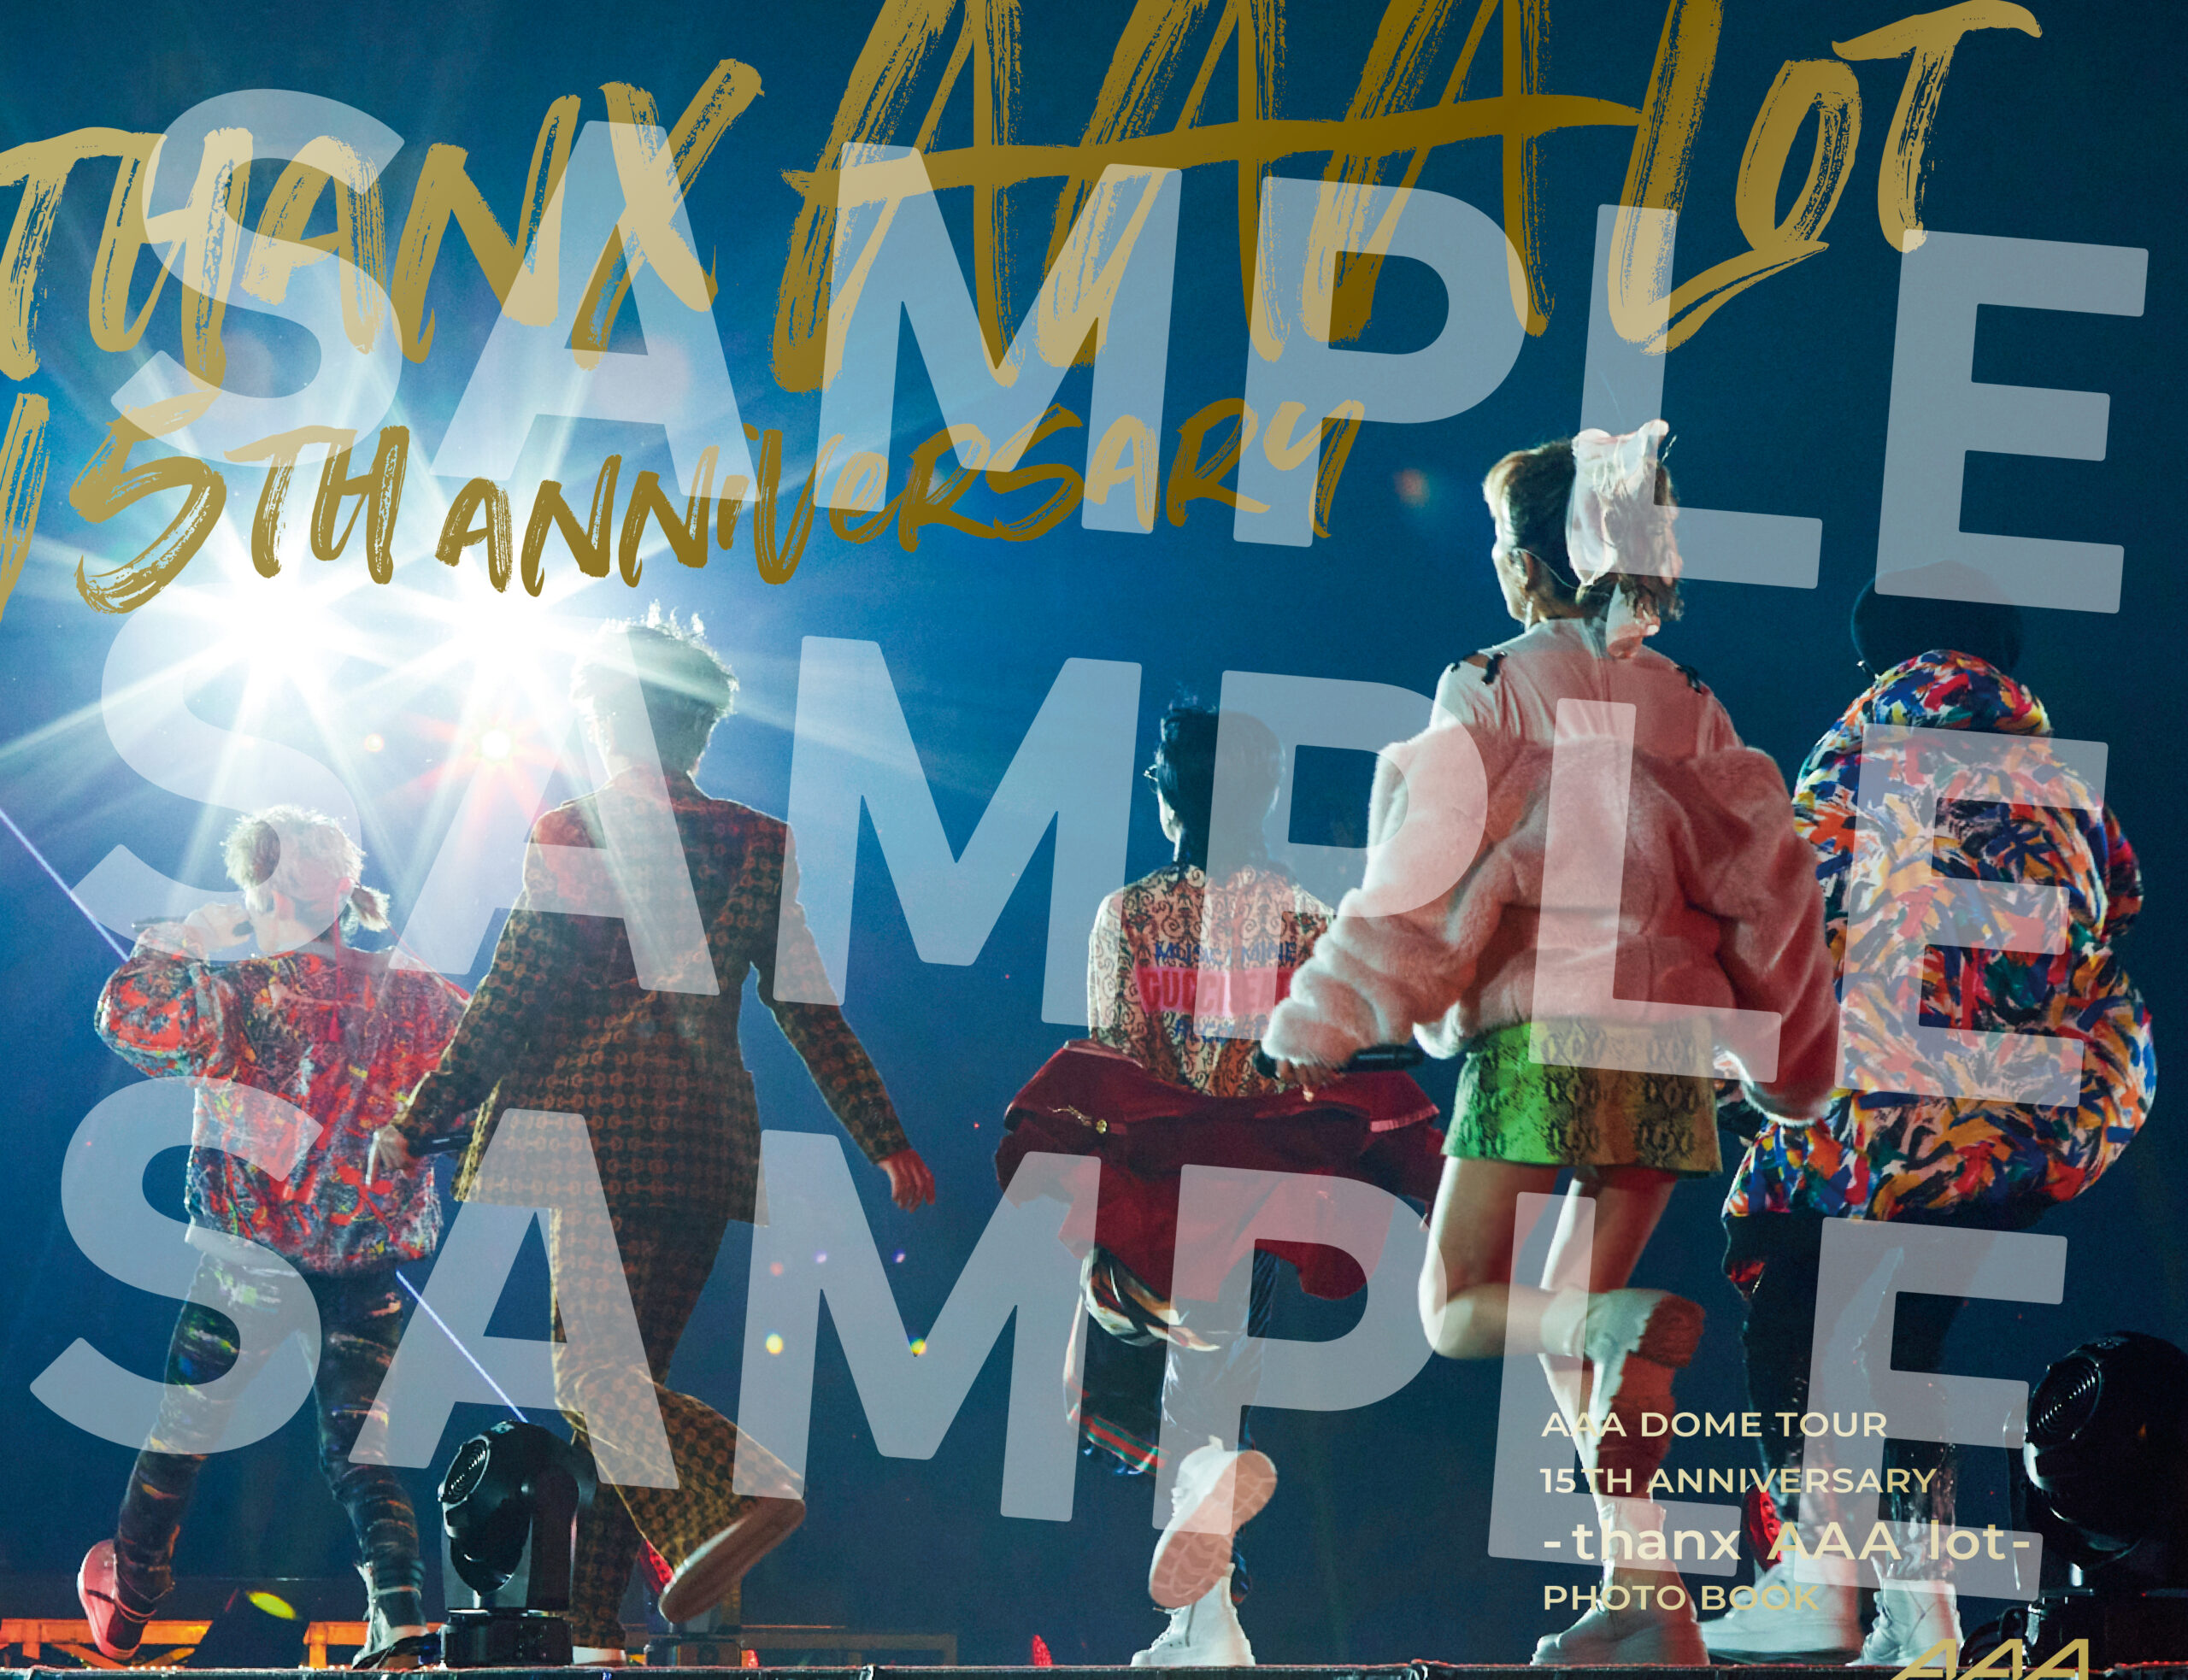 紀伊國屋書店：【紀伊國屋書店限定特典ポストカード】『AAA DOME TOUR 15th ANNIVERSARY -thanx AAA lot- PHOTO BOOK』